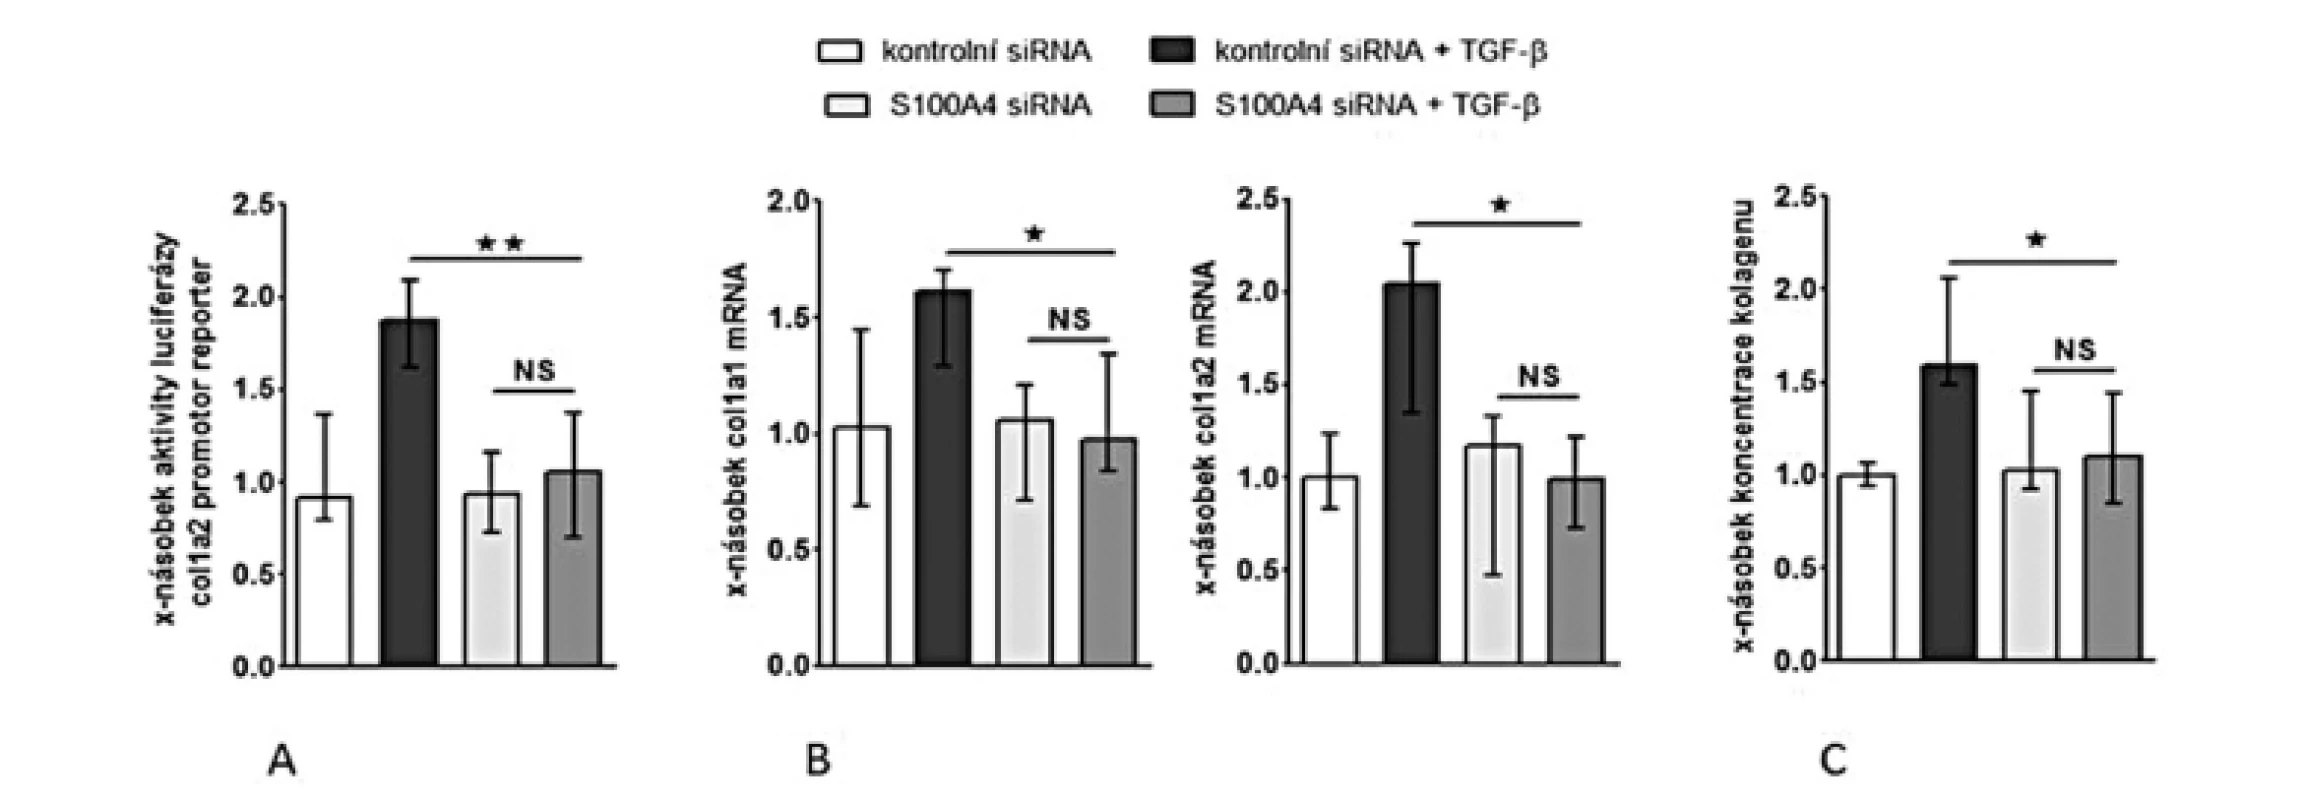 Inhibice S100A4 pomocí siRNA tlumí stimulační účinky TGF-ß na produkci kolagenu.